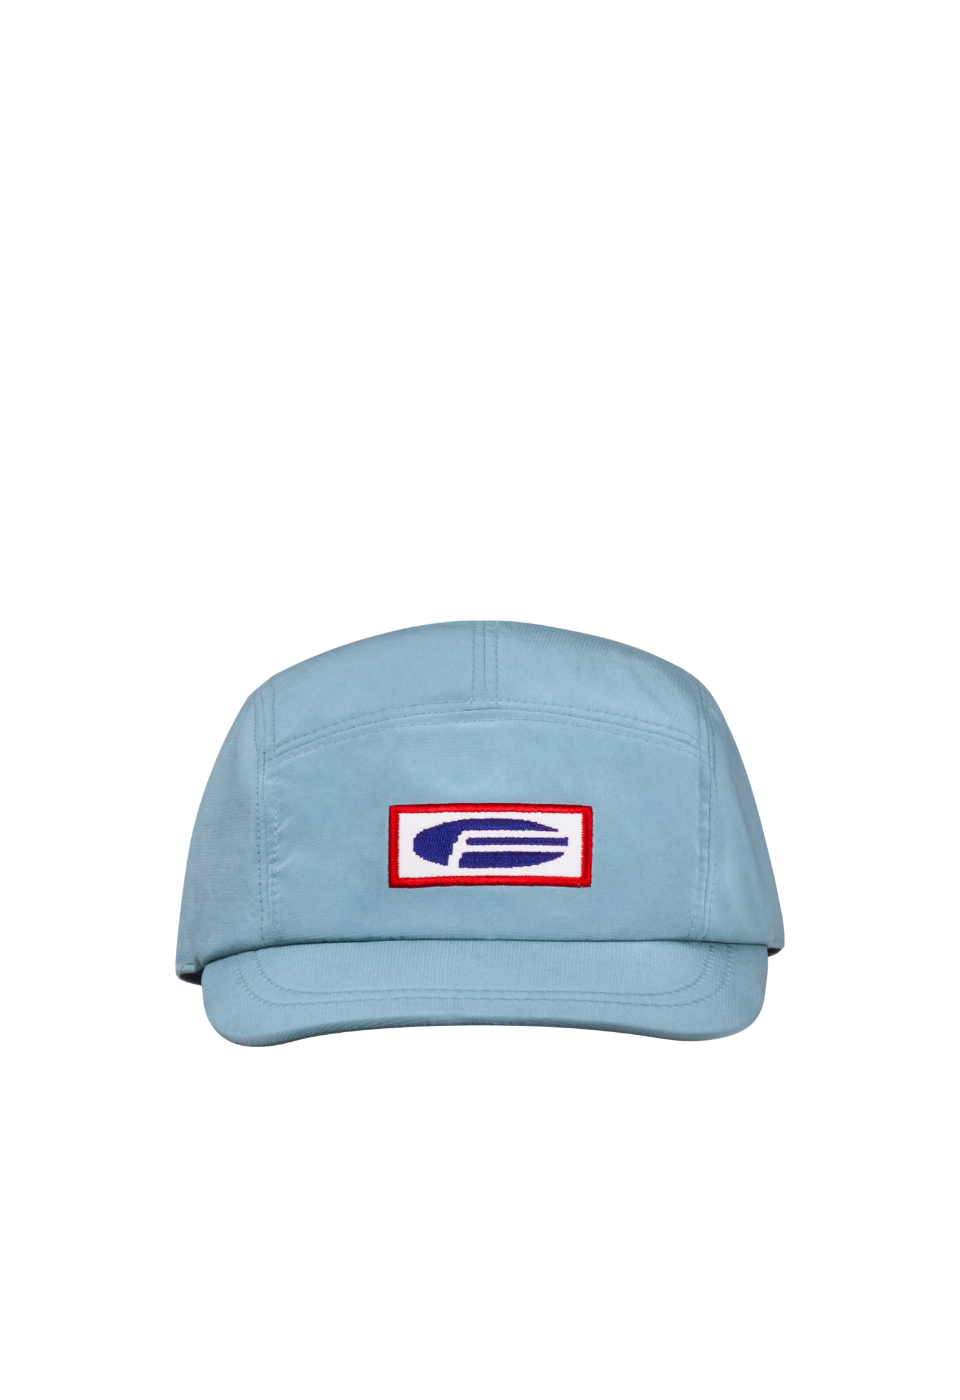 ROADCAMPER SNAP-FIT CAP(LIGHT BLUE)